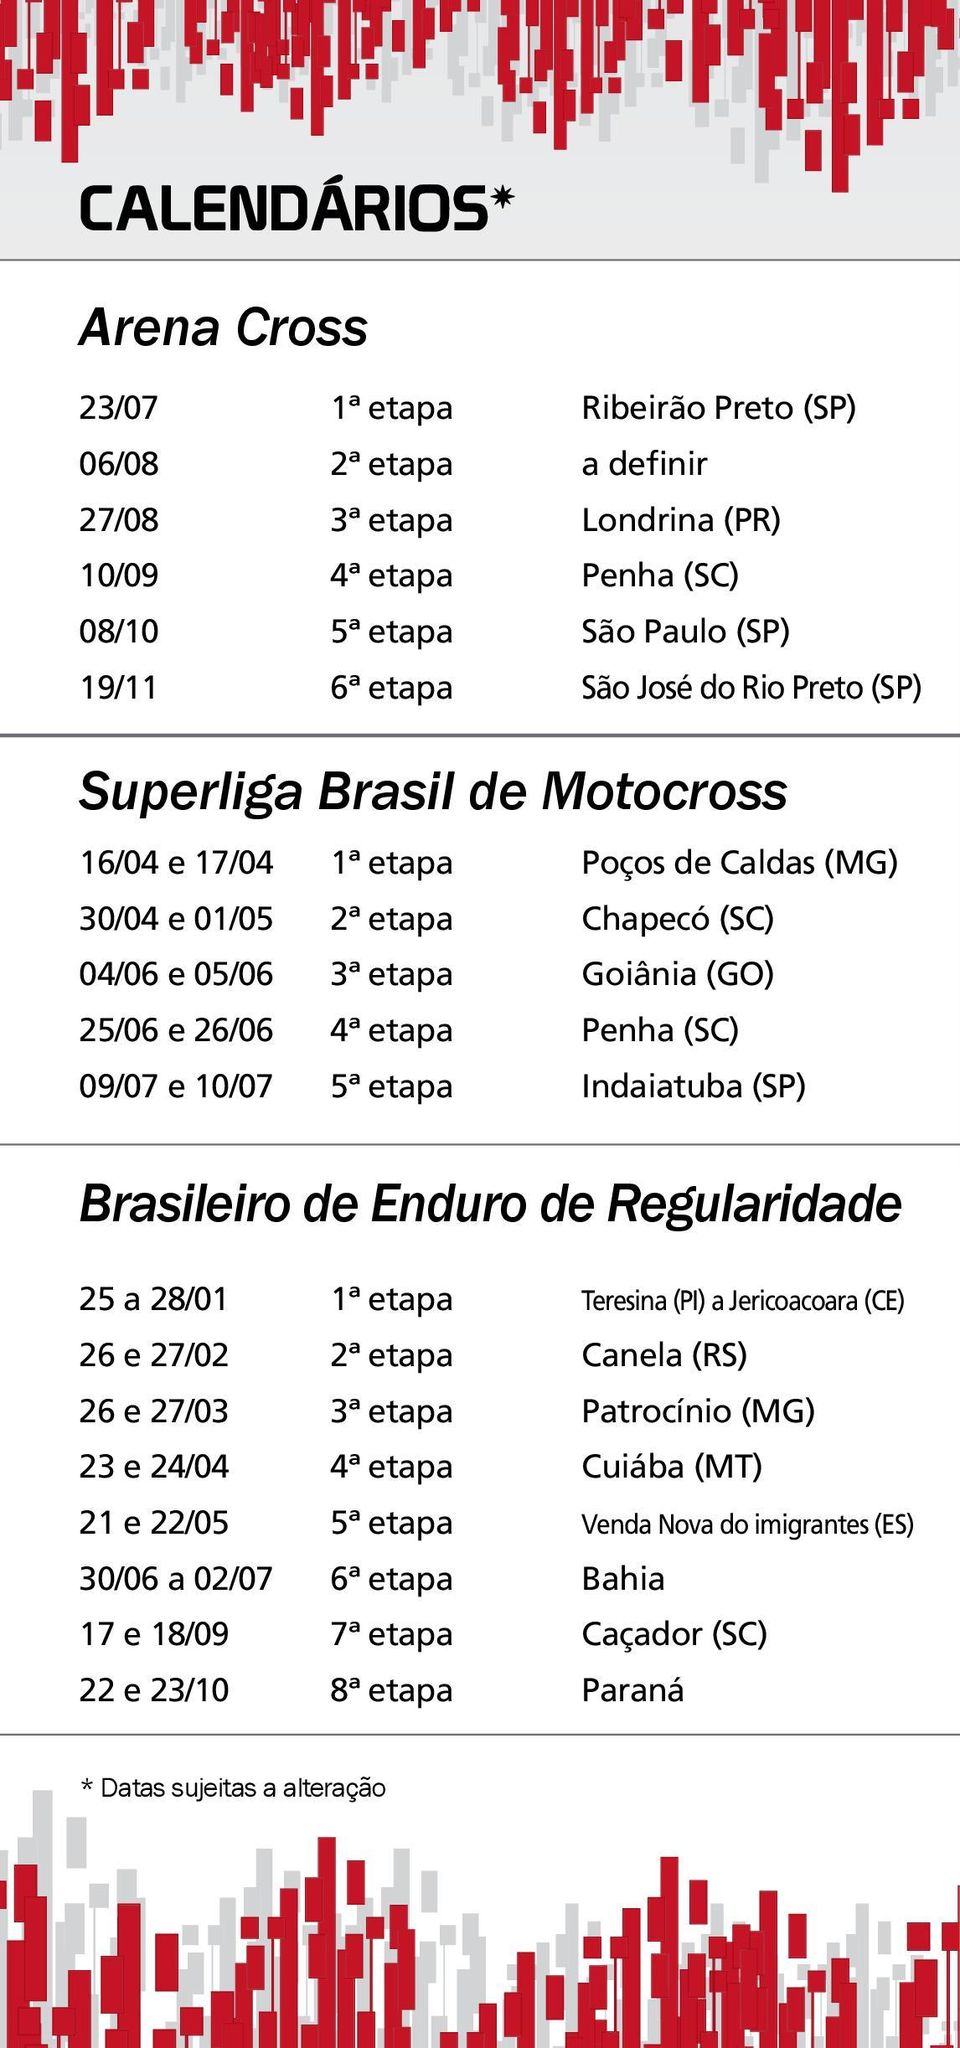 09/07 e 10/07 5ª etapa Indaiatuba (SP) Brasileiro de Enduro de Regularidade 25 a 28/01 1ª etapa Teresina (PI) a Jericoacoara (CE) 26 e 27/02 2ª etapa Canela (RS) 26 e 27/03 3ª etapa Patrocínio (MG)